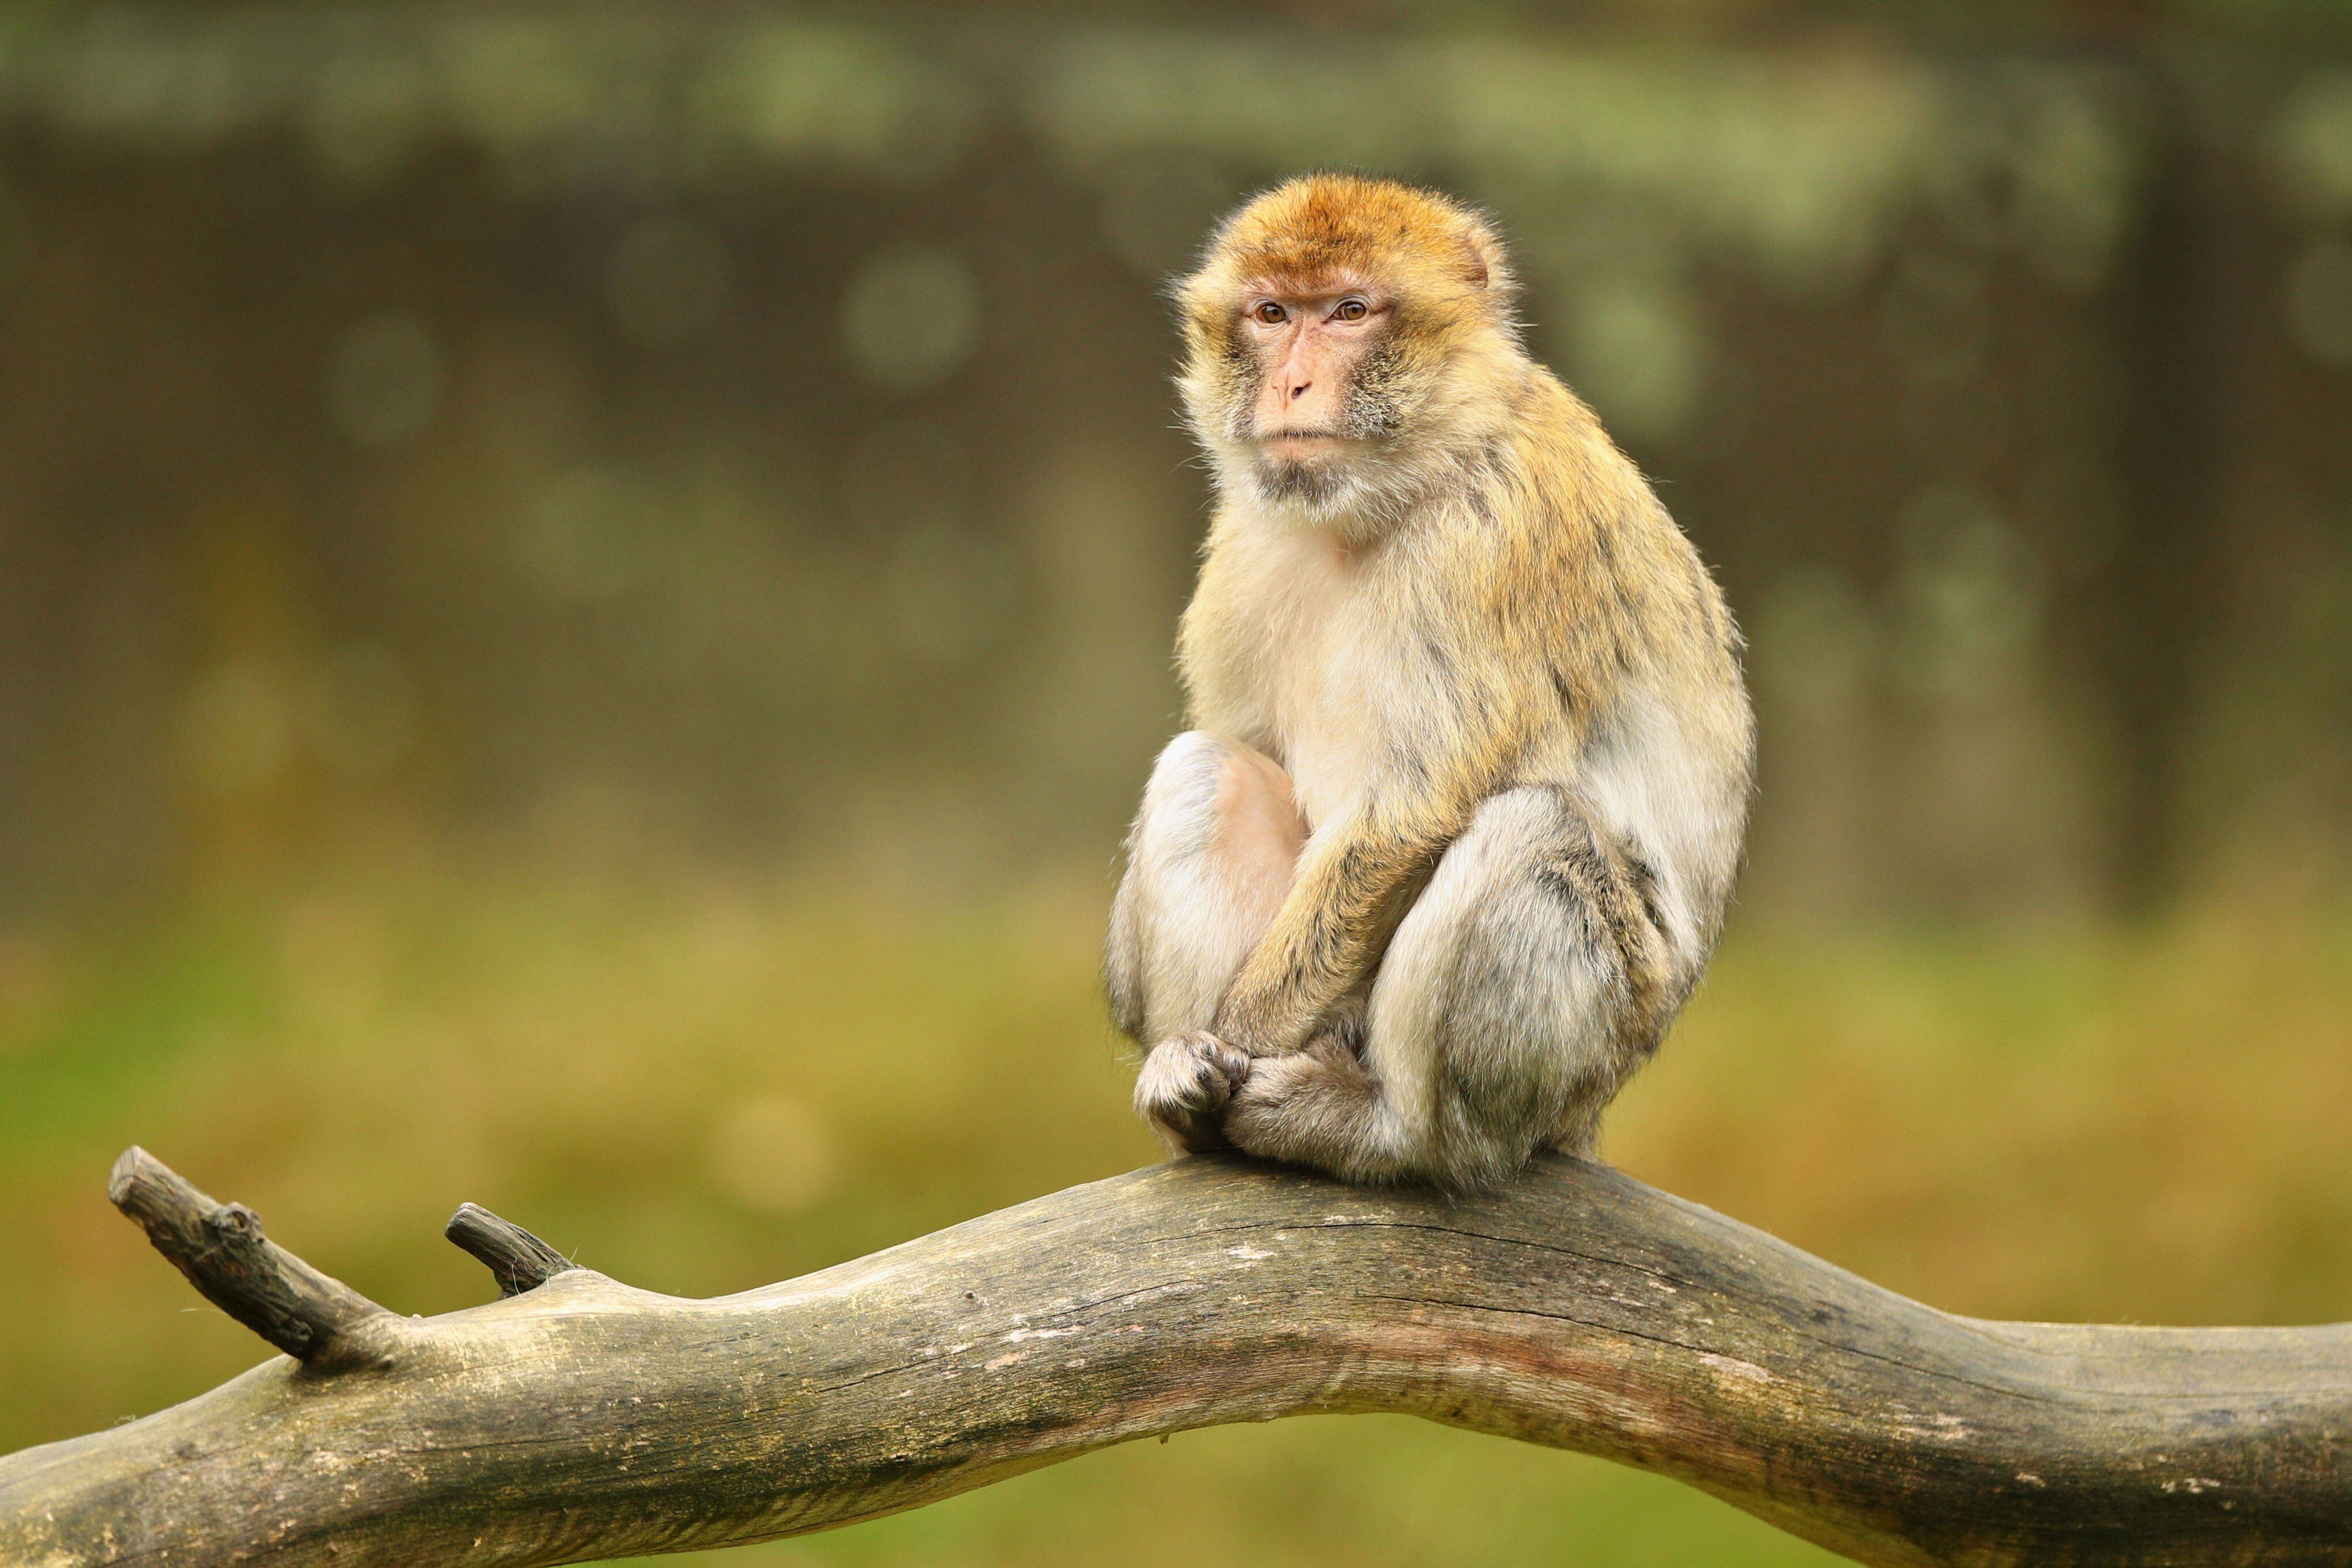 Soñar con monos puede simbolizar tu deseo de ser más creativo (Foto: Freepik)